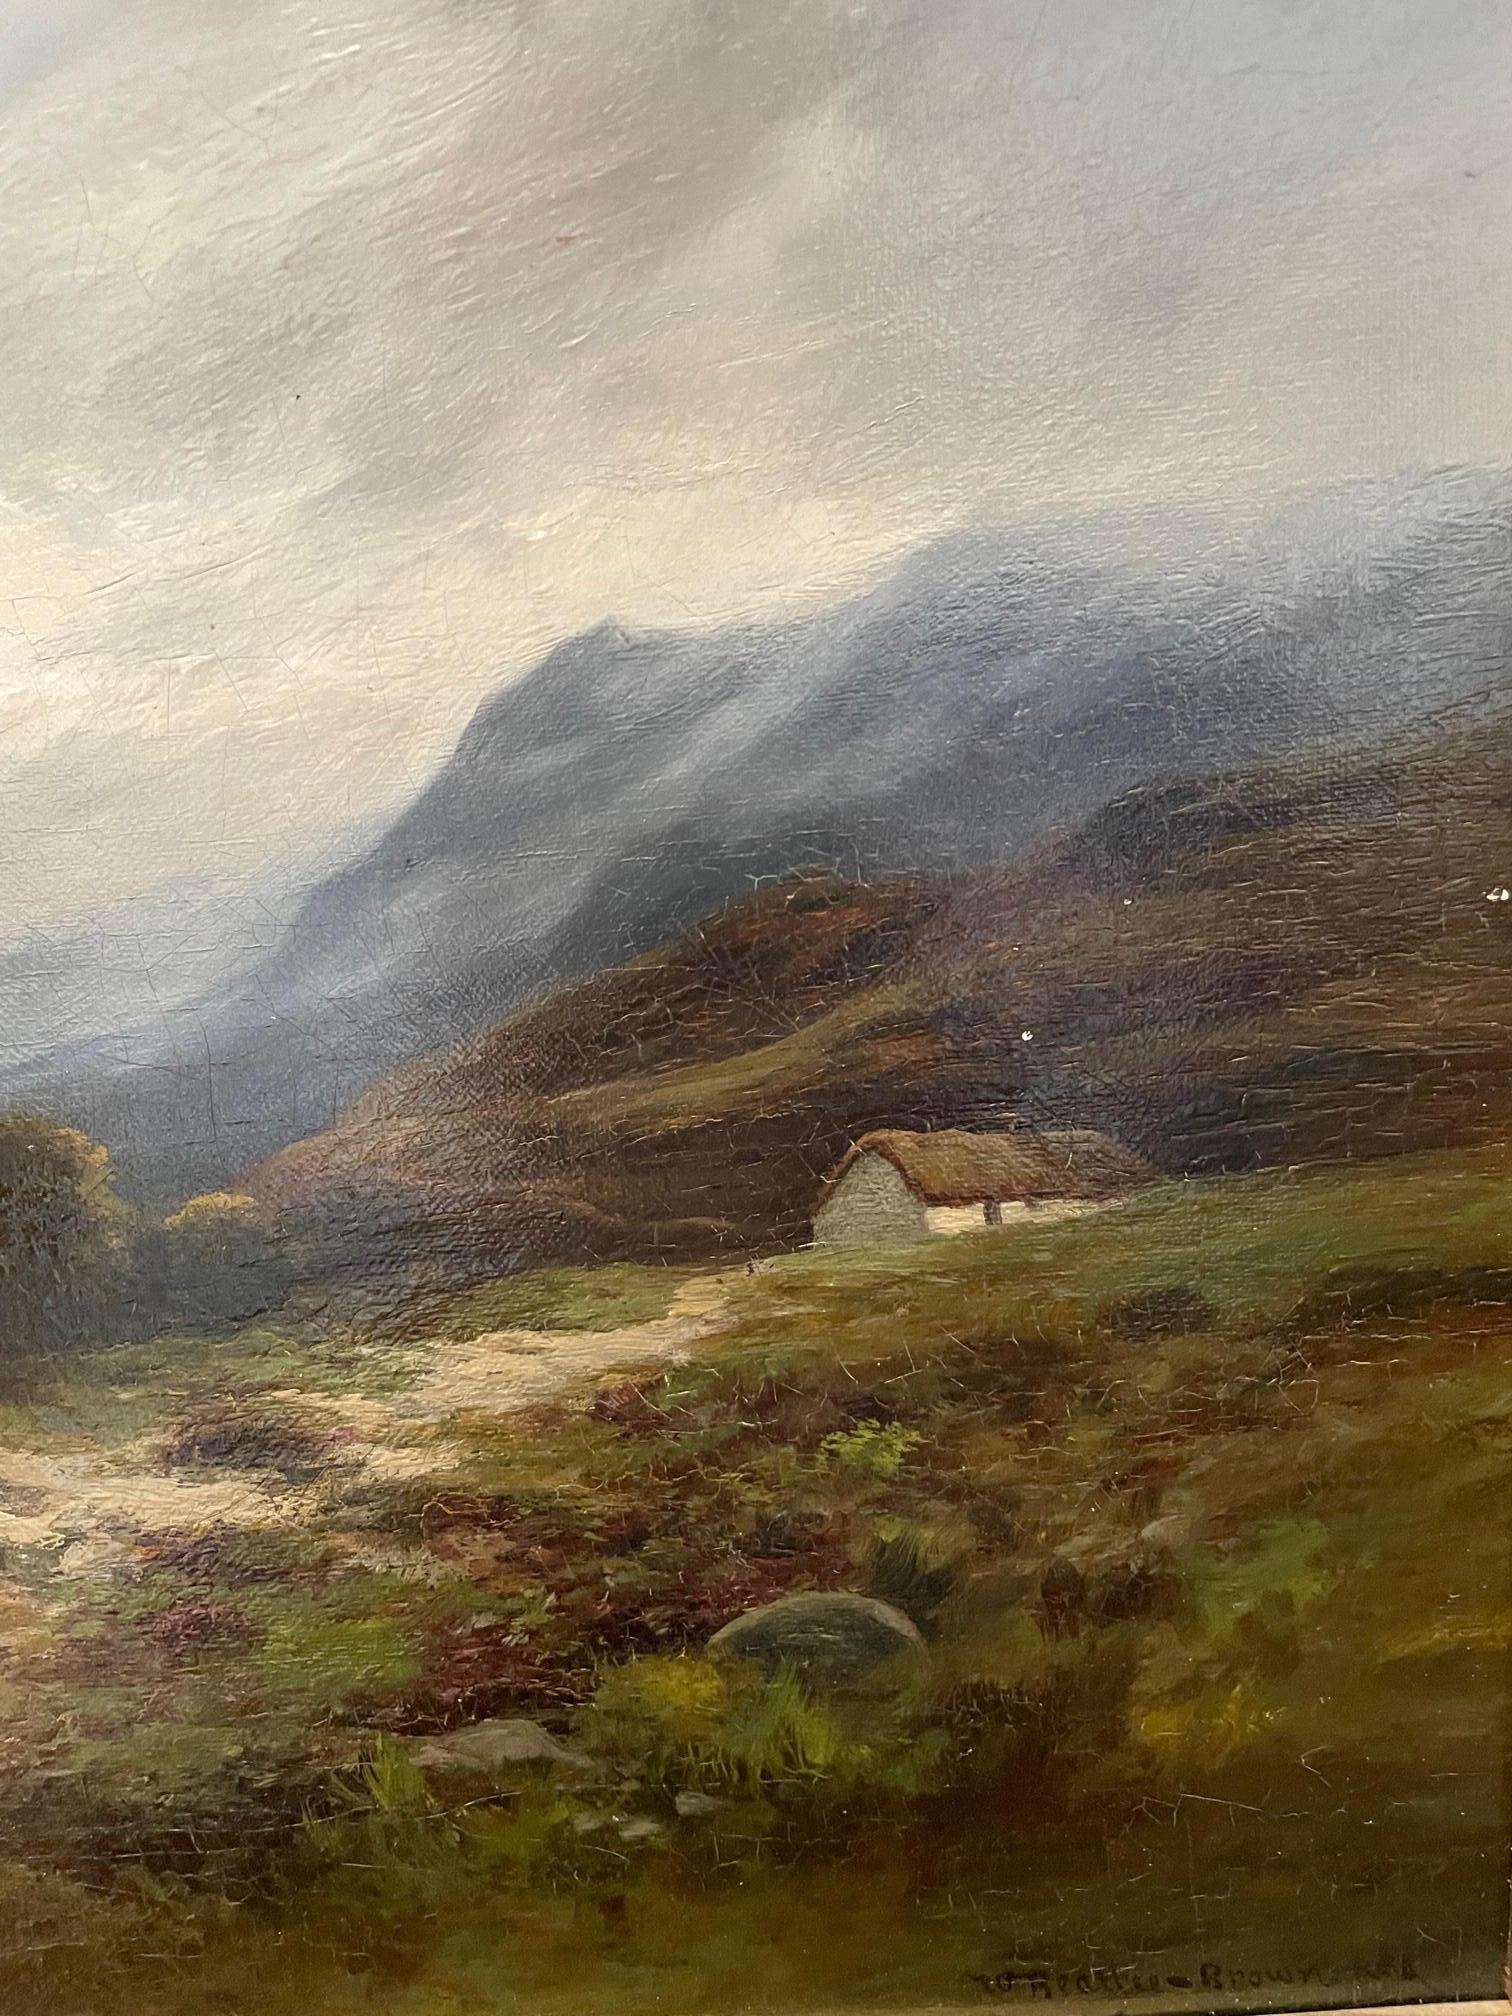 William Beattie-Brown, RSA, (1831-1909) malte Landschaften mit großer Beherrschung der Elemente und war bekannt für seine Darstellung von Stromschnellen in Gewässern und detailliertem Blattwerk in der Ferne. Sein Werk hat oft eine tonale Qualität,